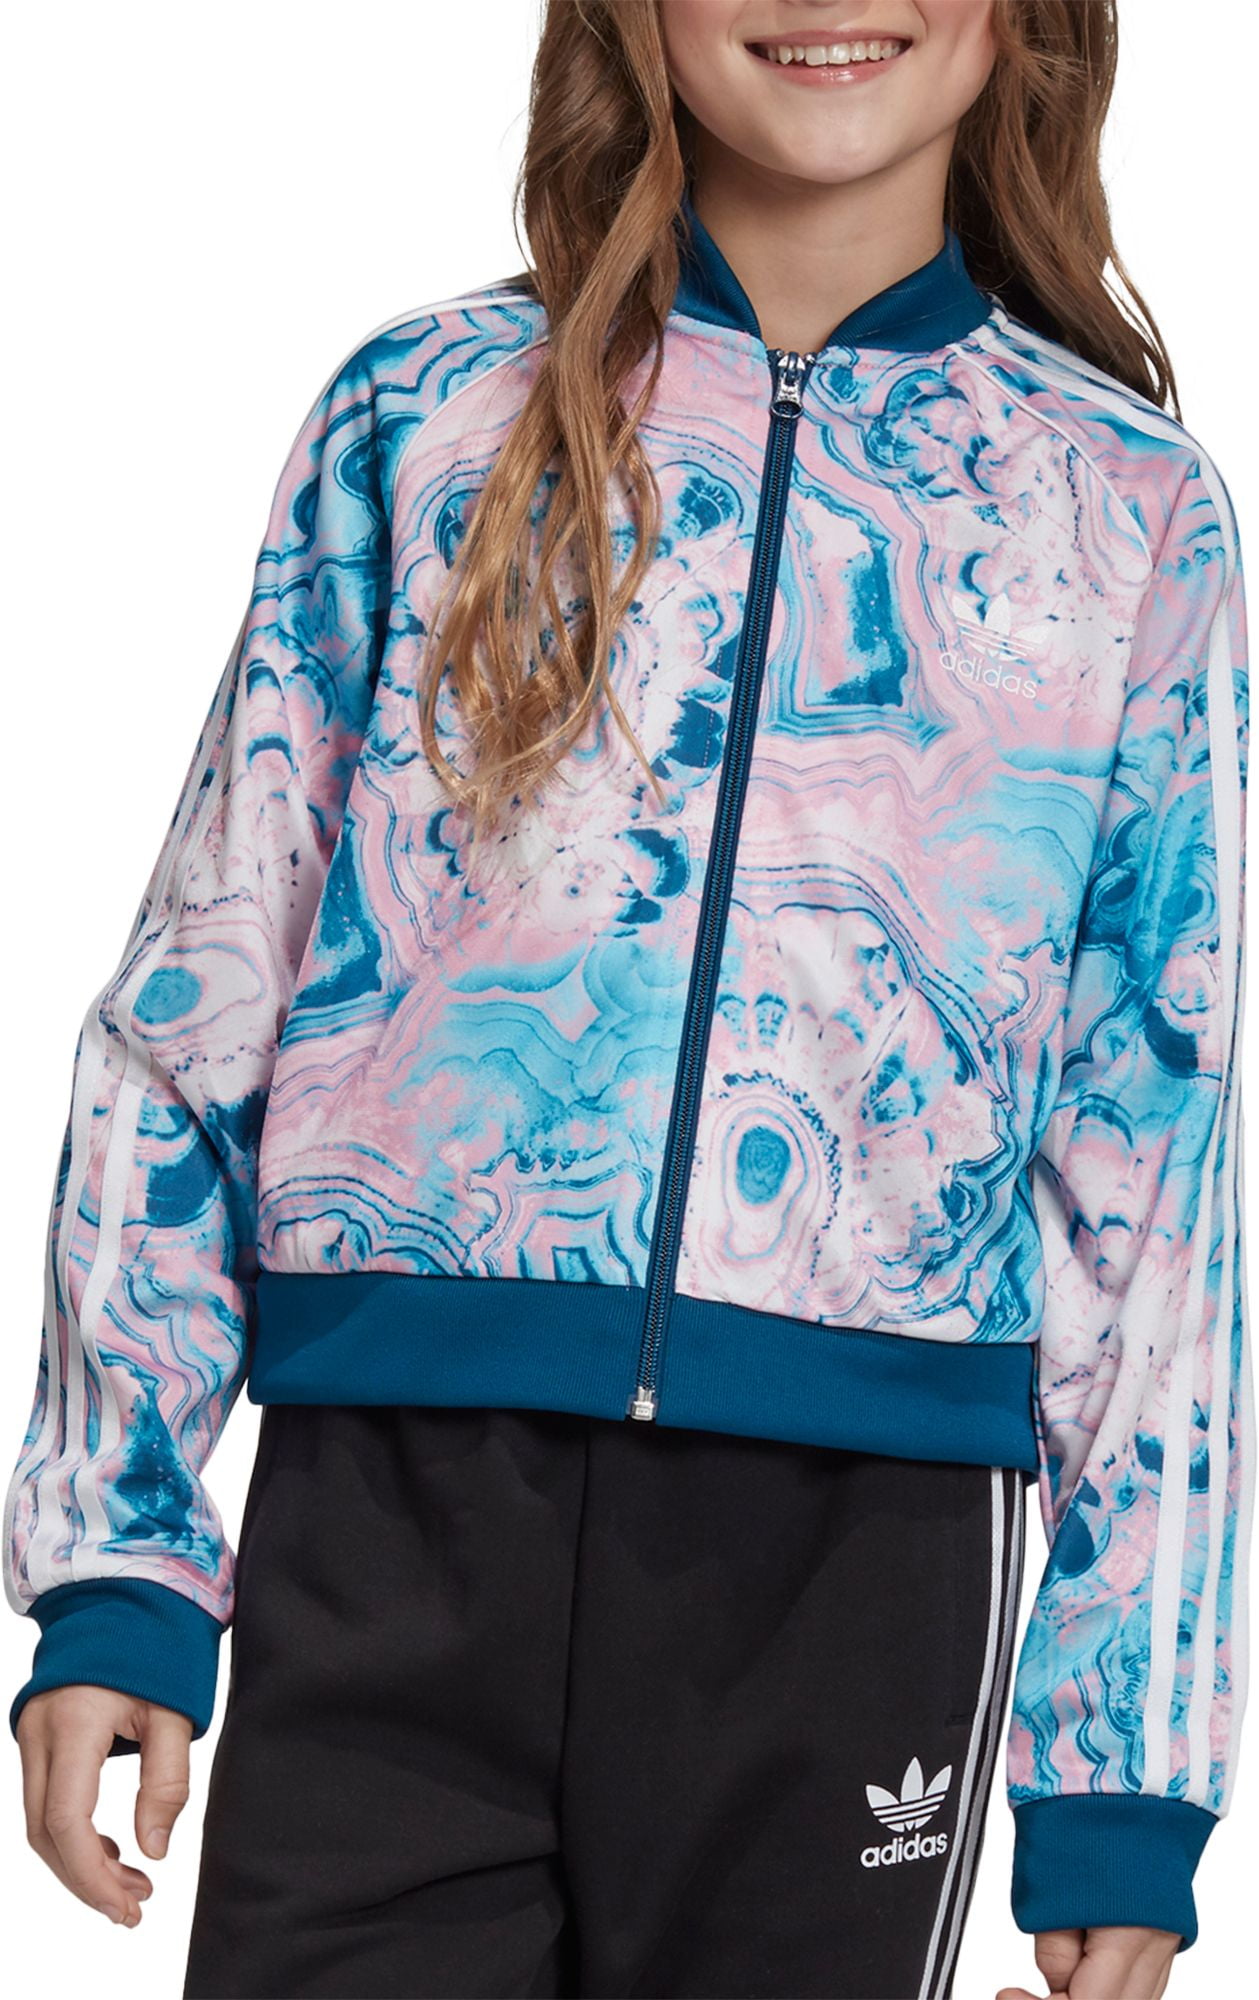 adidas girls track jacket